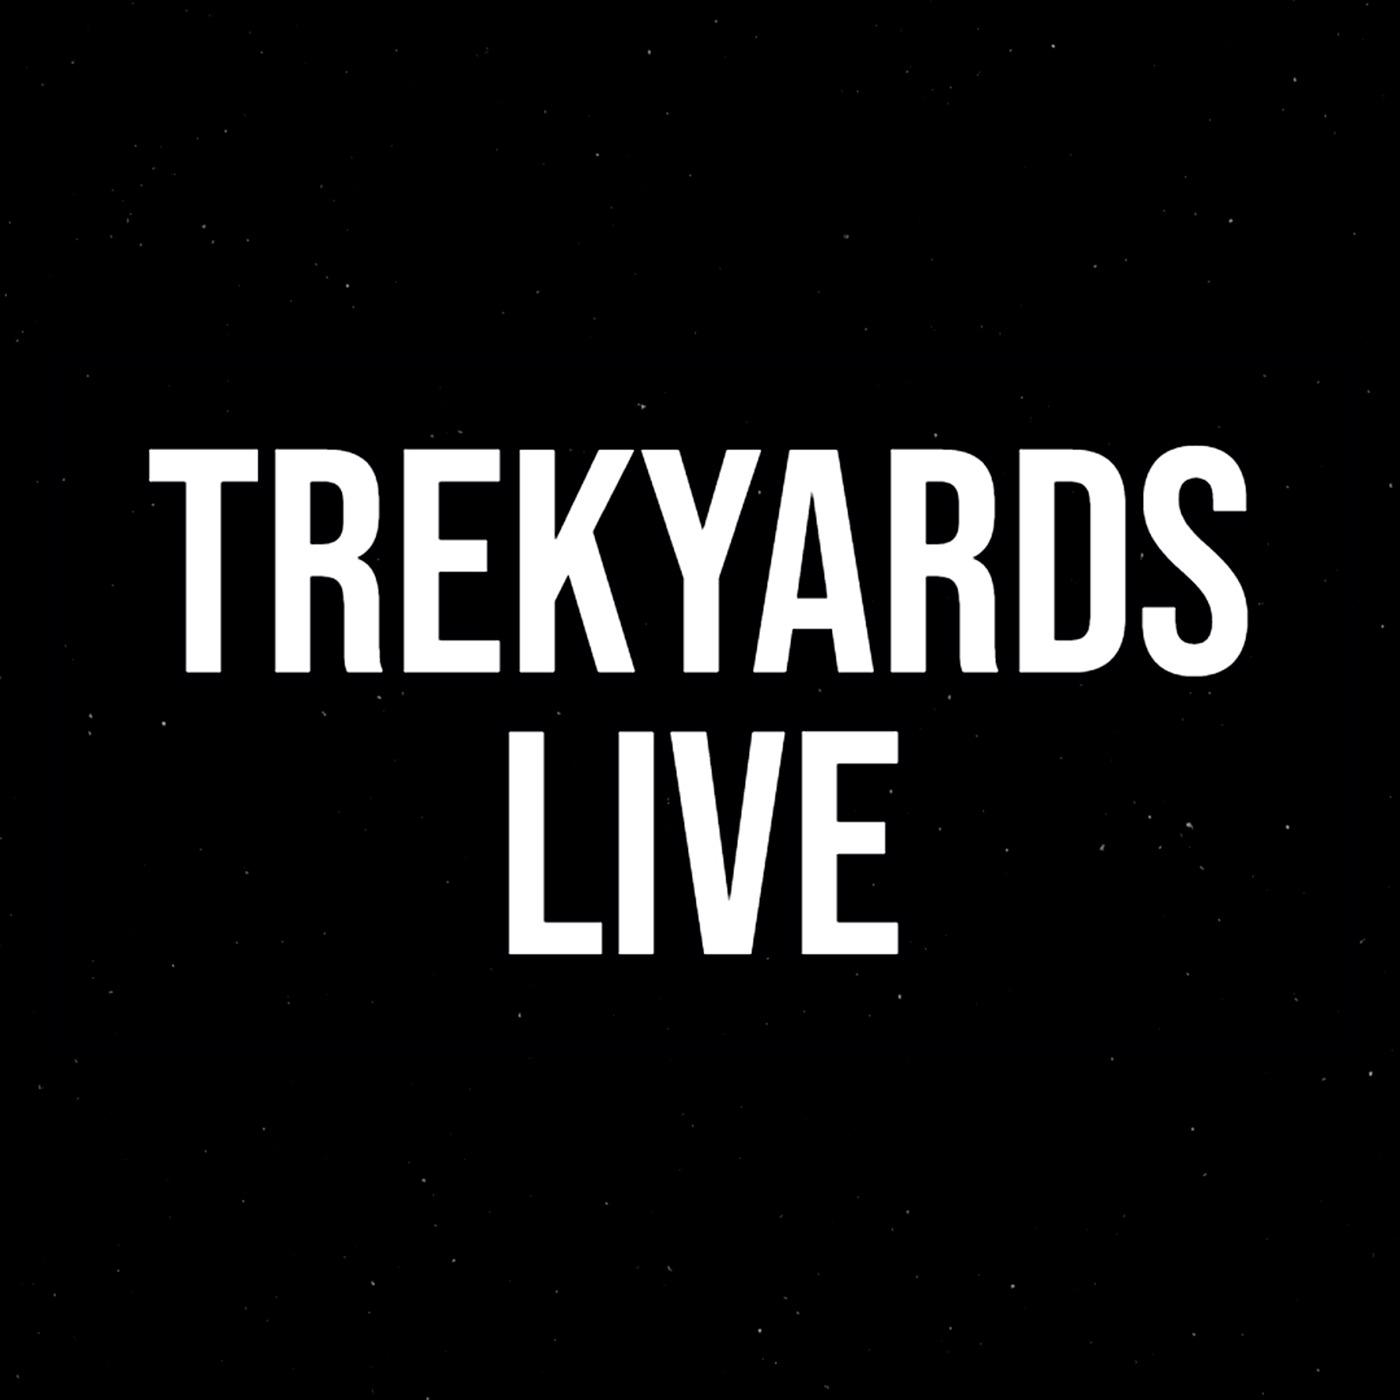 Trekyards Live